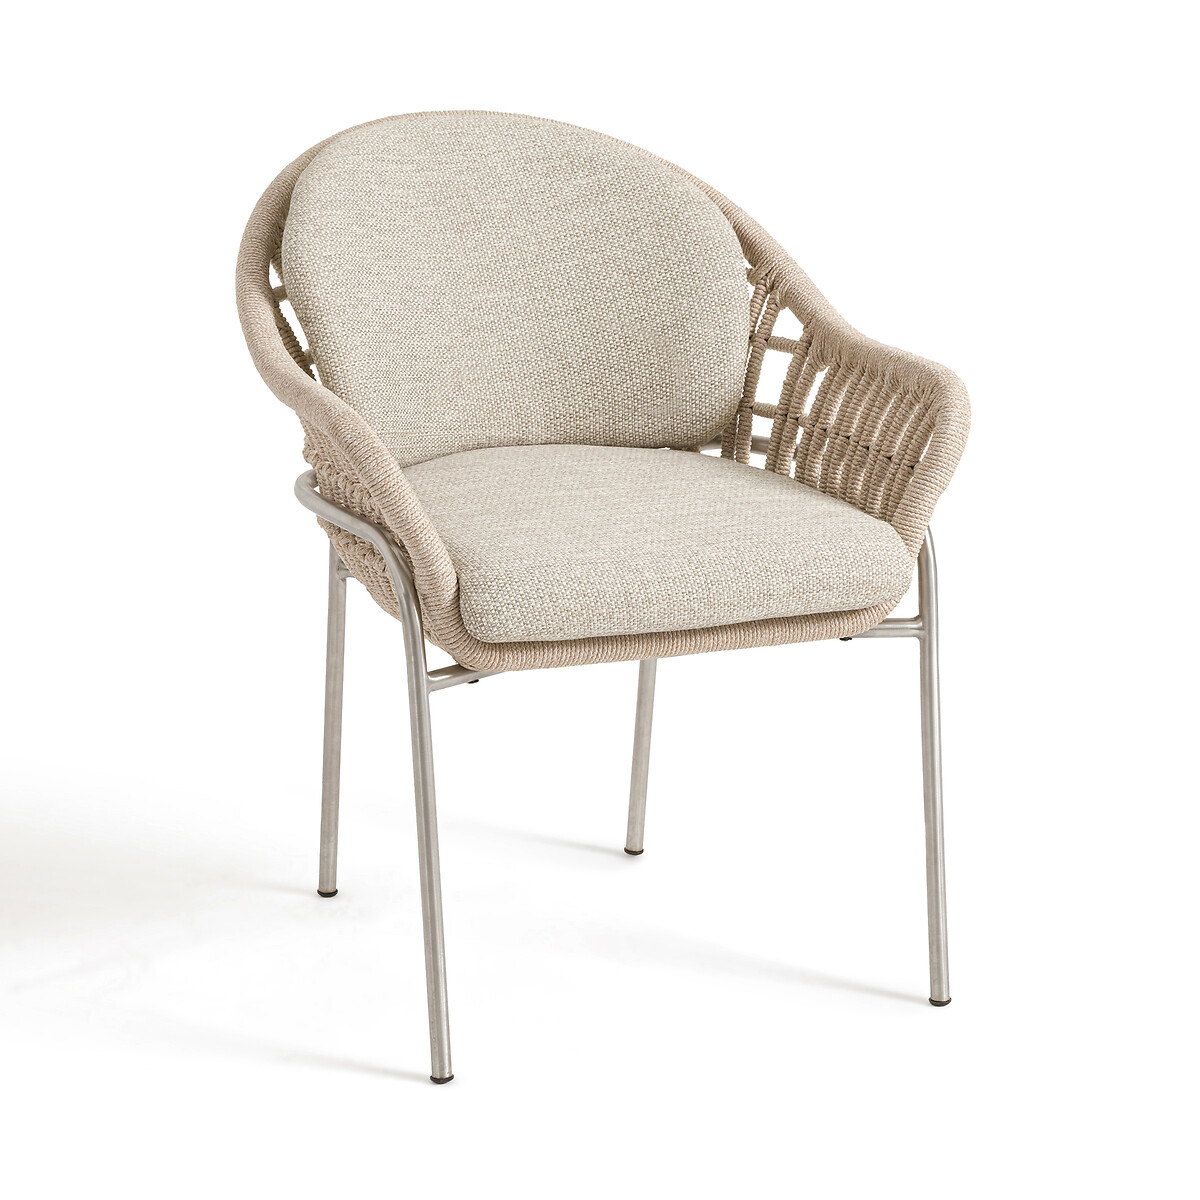 Кресло столовое для сада Irati единый размер бежевый кресло столовое с переплетенными ремешками leandra единый размер бежевый